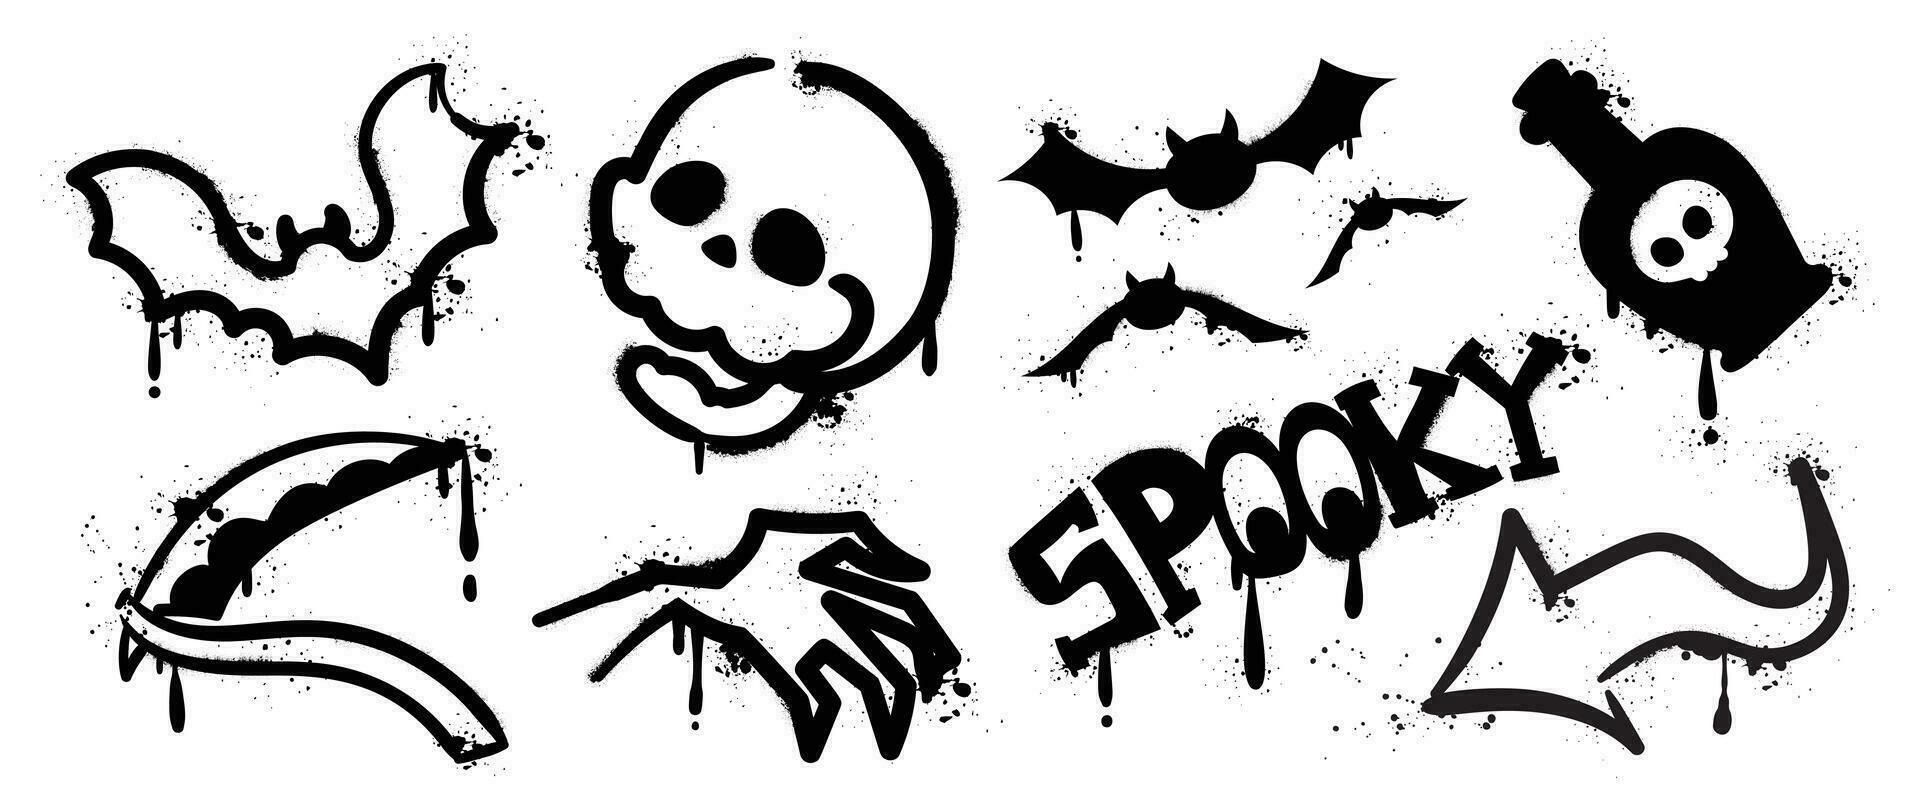 uppsättning av graffiti spray mönster. samling av halloween symbol, spöke, fladdermus, skalle, pil, förgifta med spray textur. element på vit bakgrund för klistermärke, baner, dekoration, gata konst, halloween. vektor